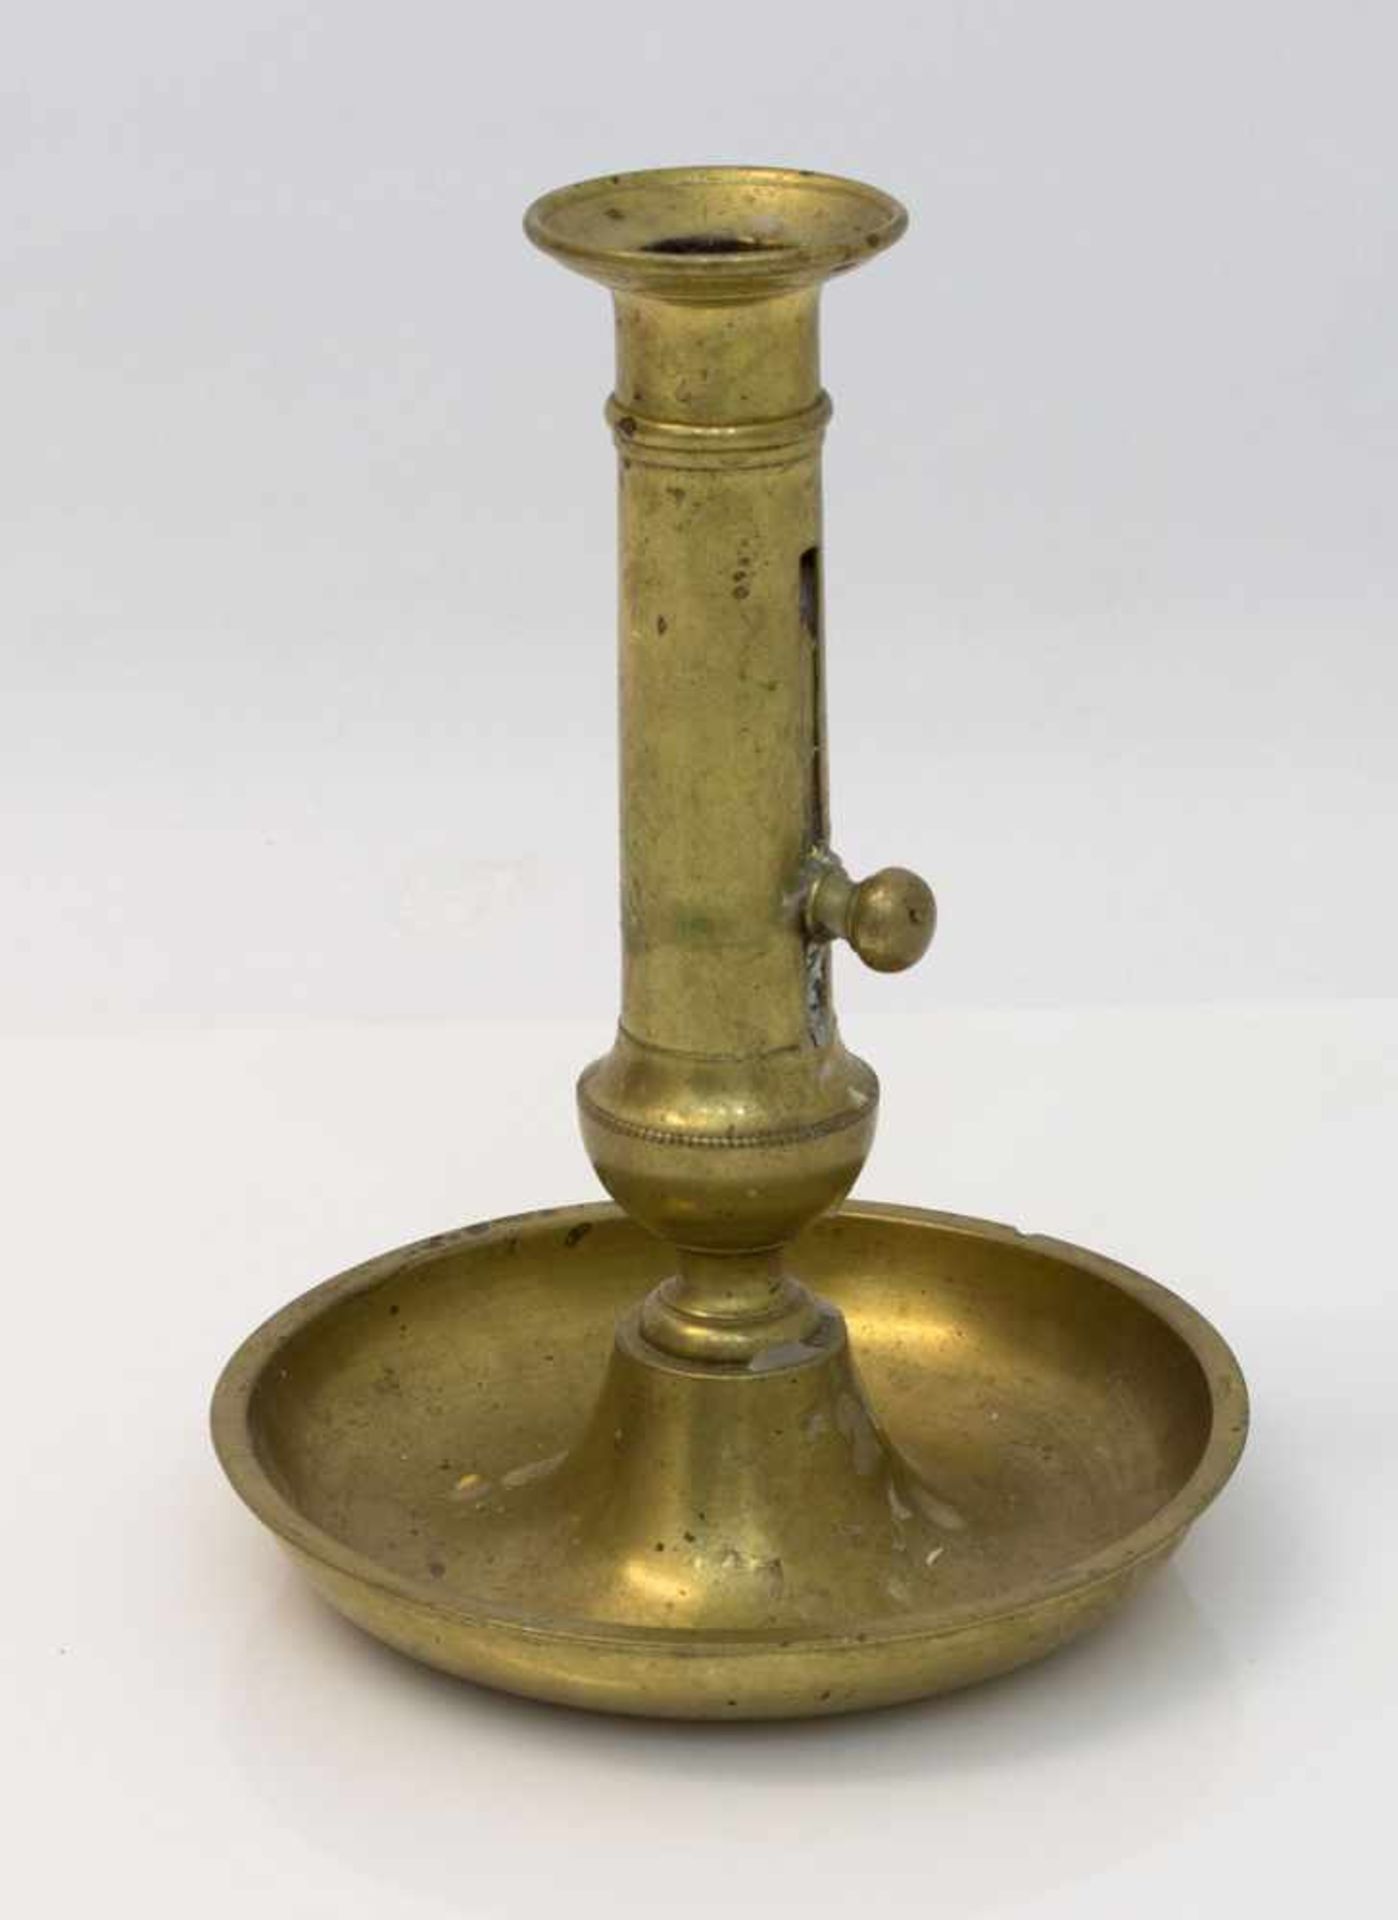 Tellerleuchter Messing-Schiebeleuchter um 1880, auf rundem Teller, H. 18 cm